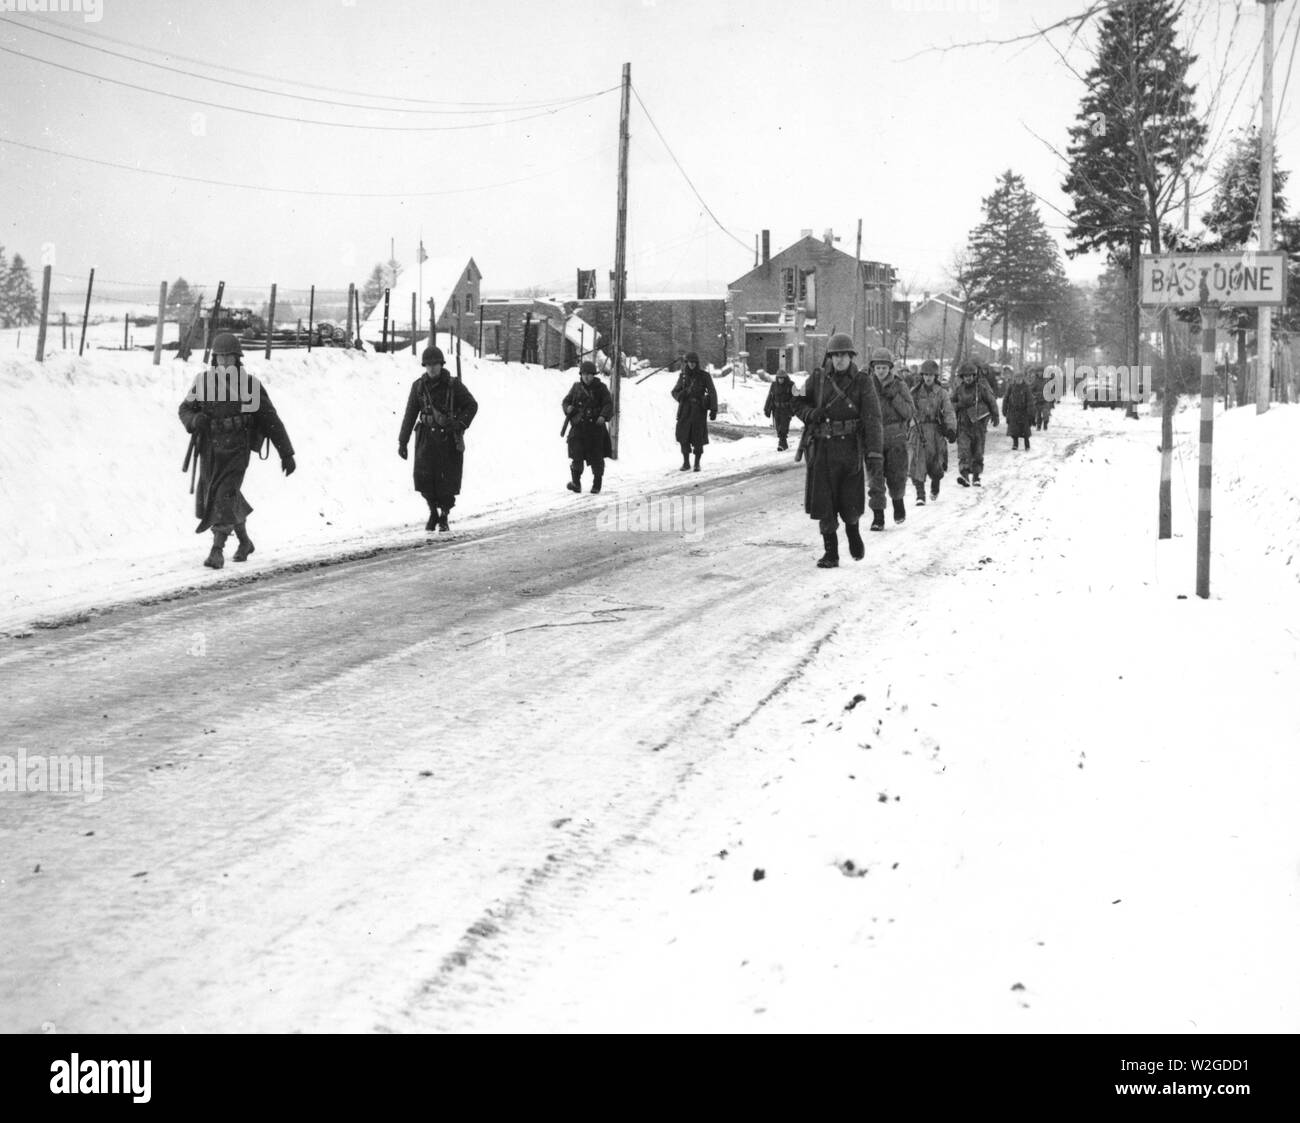 Mitglieder der Luftlandedivision von Bastogne, Belgien, den Deutschen, die Sie zehn Tage lang belagert haben, aus einer benachbarten Stadt. Dieses Foto wurde aufgenommen, während Bastogne noch unter Belagerung war. 12/29/44. Stockfoto